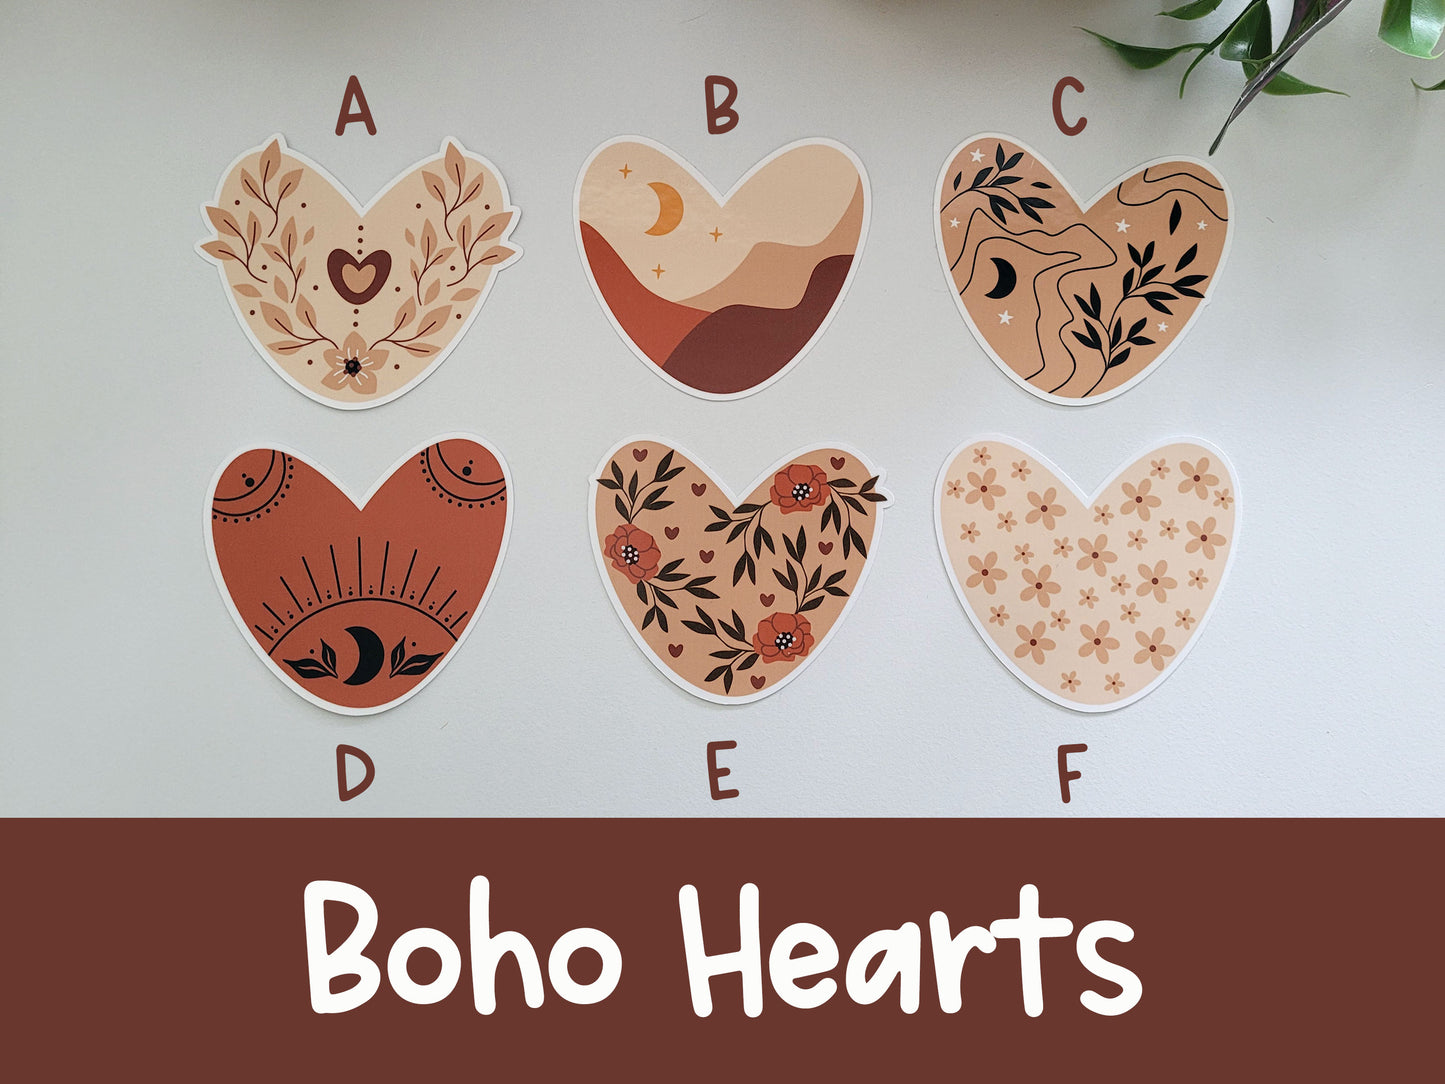 Boho Hearts Vinyl Sticker